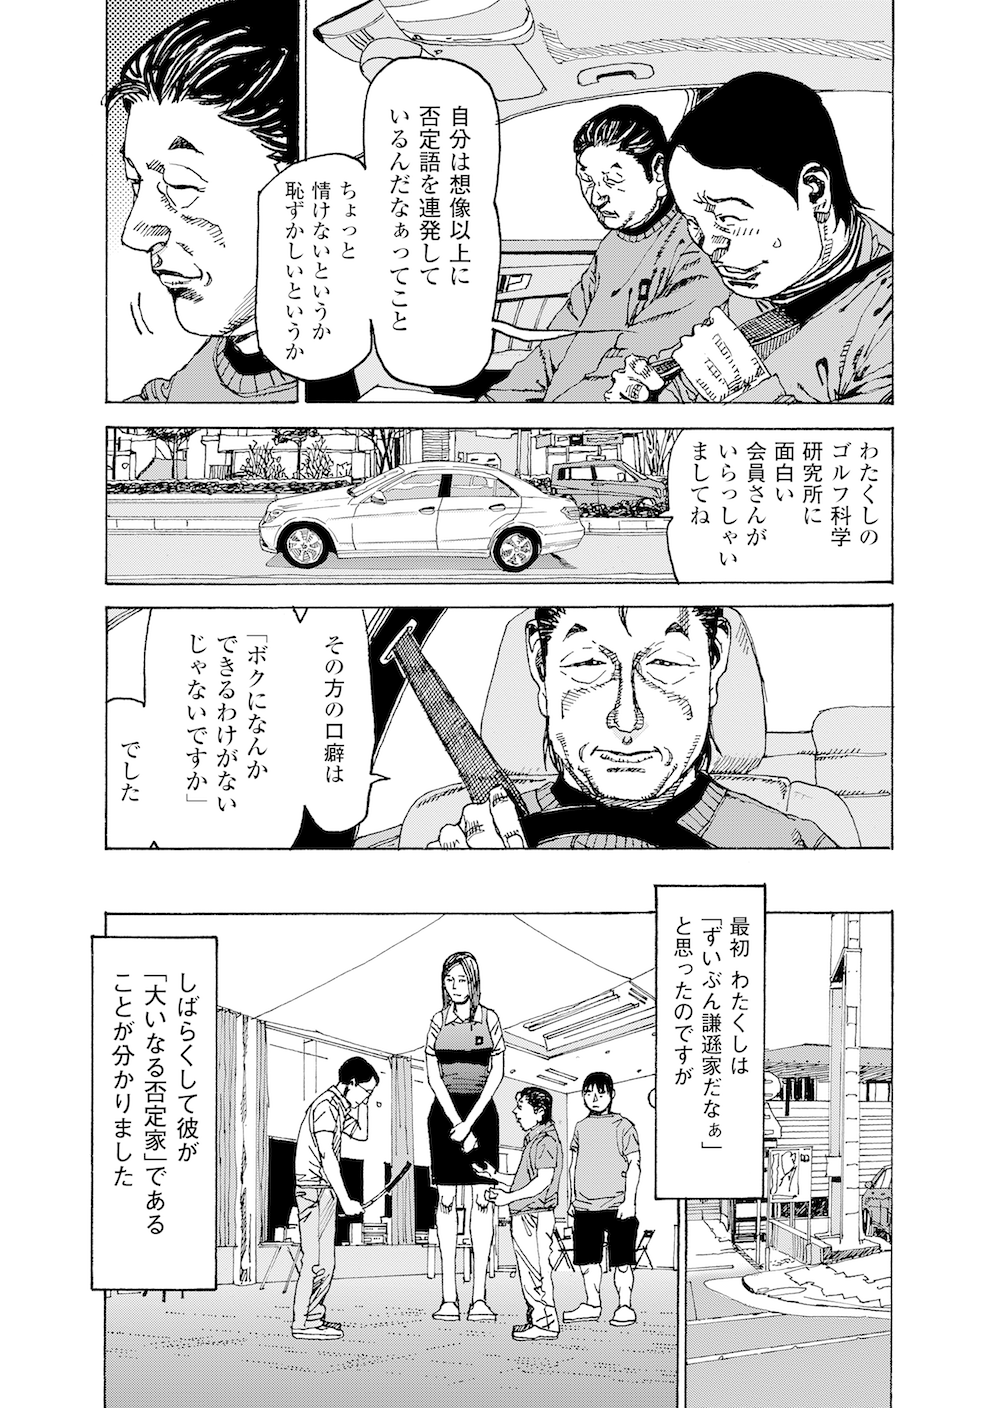 第25話 「練習場ではいい球が出るのに…なぜ？」 - 無料で読めるゴルフレッスンコミックWEB | 日本文芸社